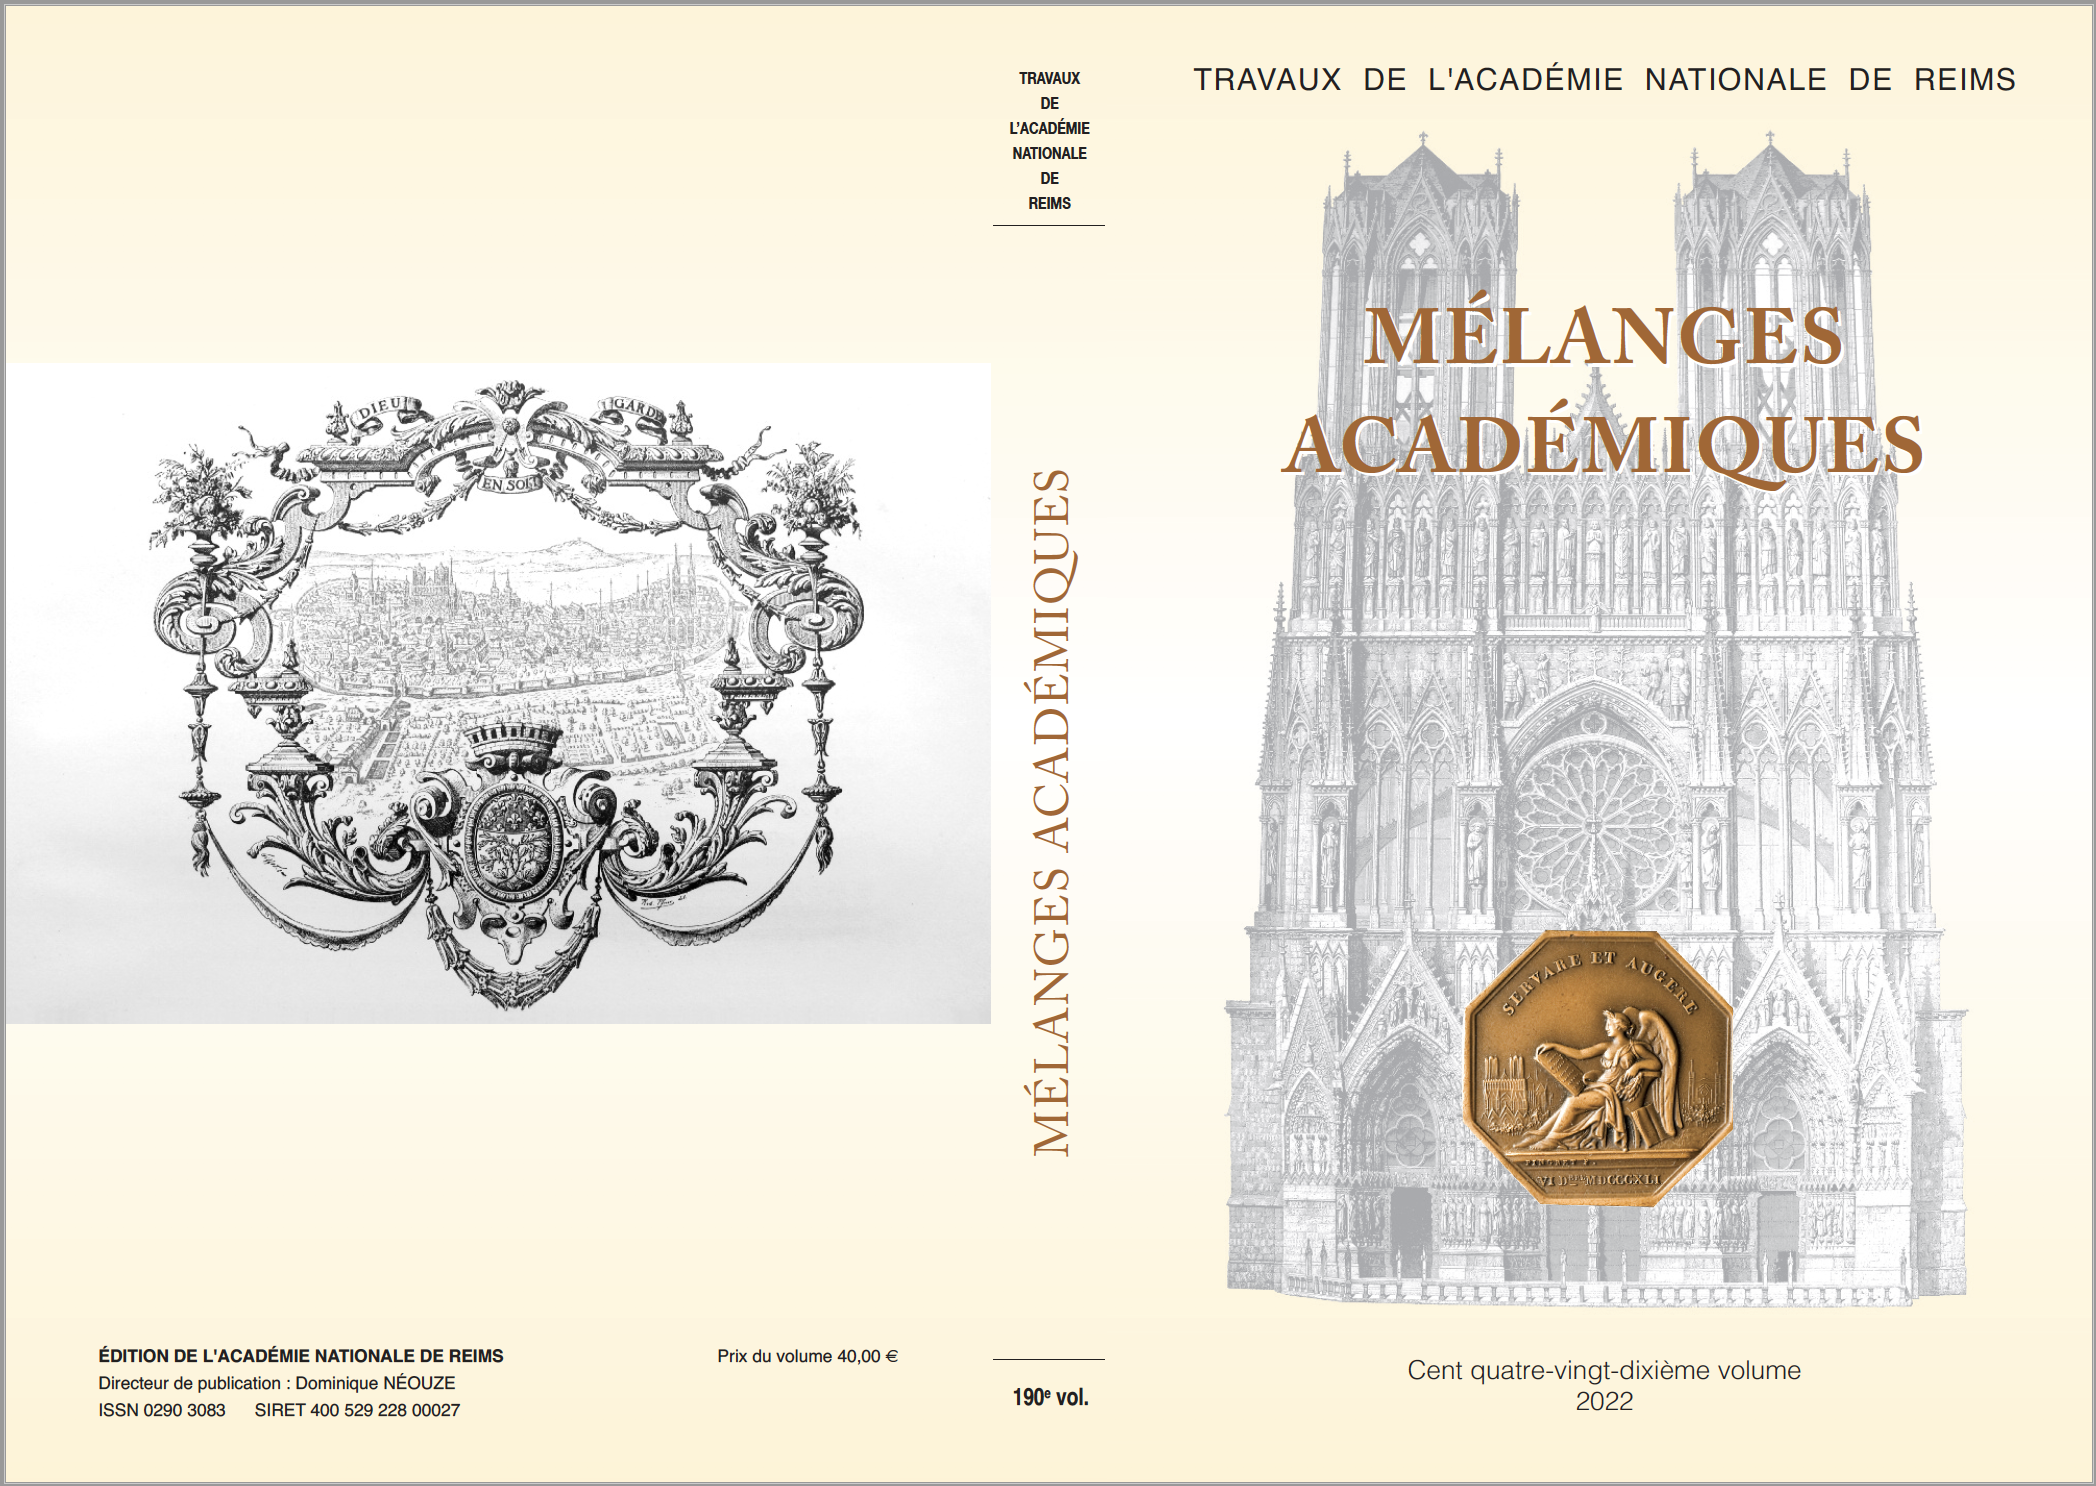 Illustration du livre Mélanges Académiques, publié en septembre 2022